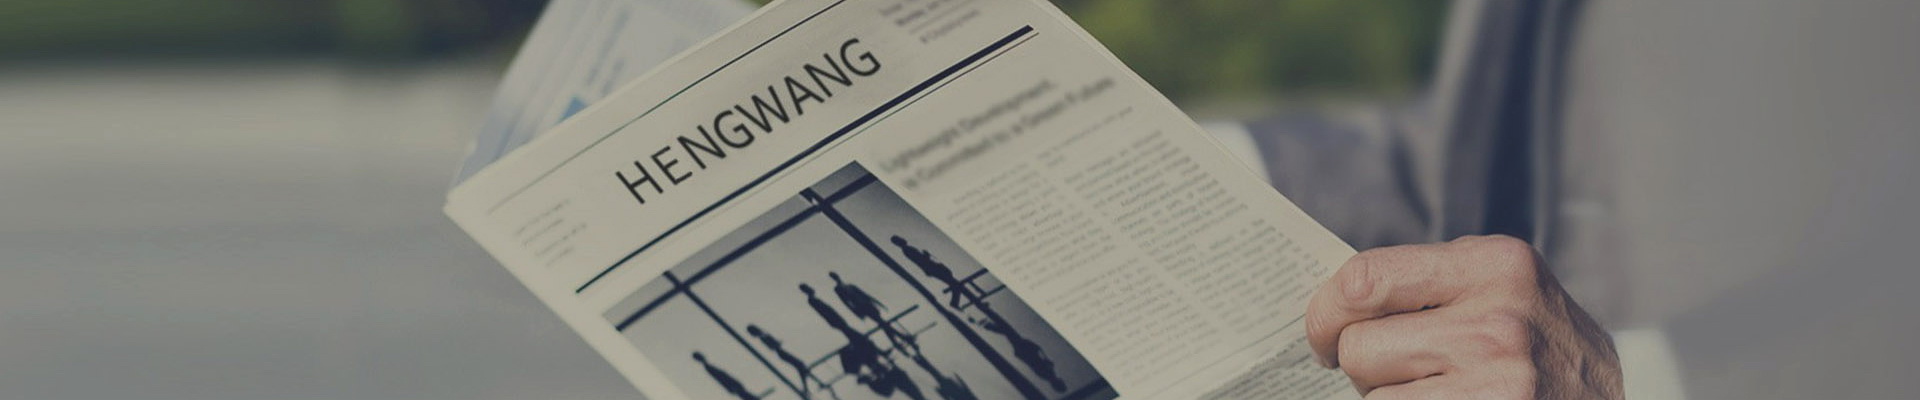 Hengwang News